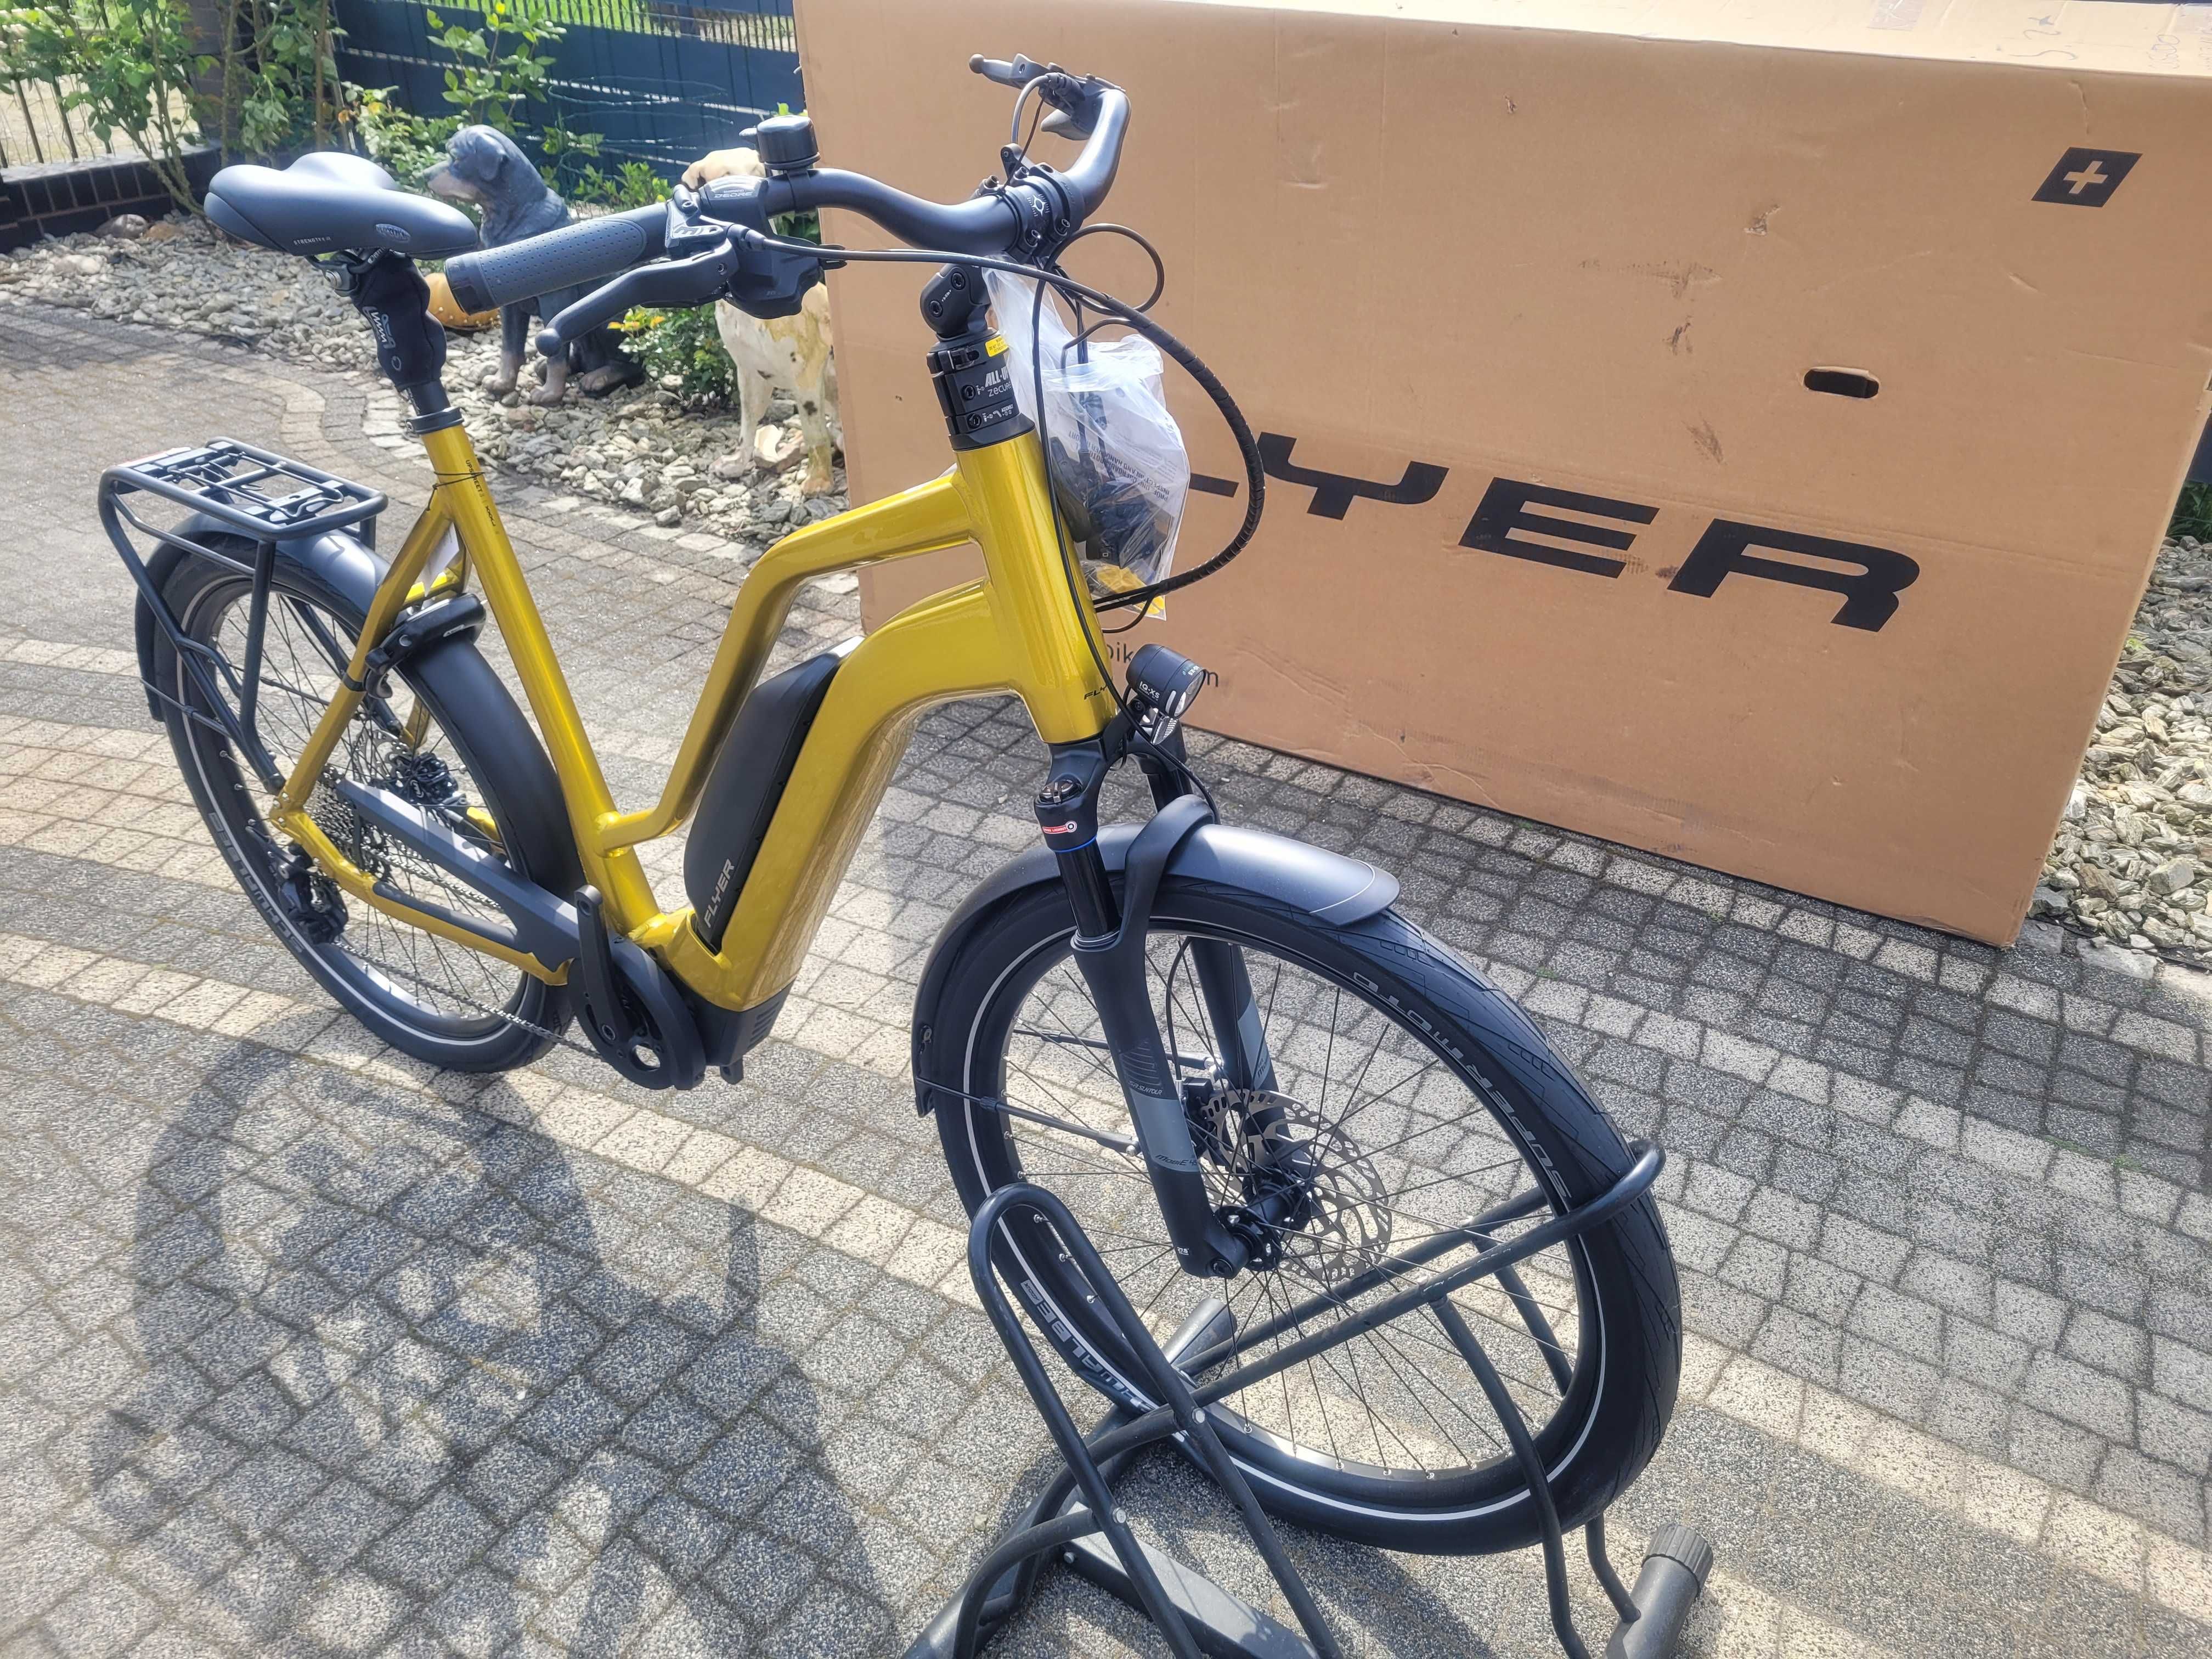 promocja 42% nowy rower elektryczny flyer upstreet3 7.10 xxl 21.5 tys